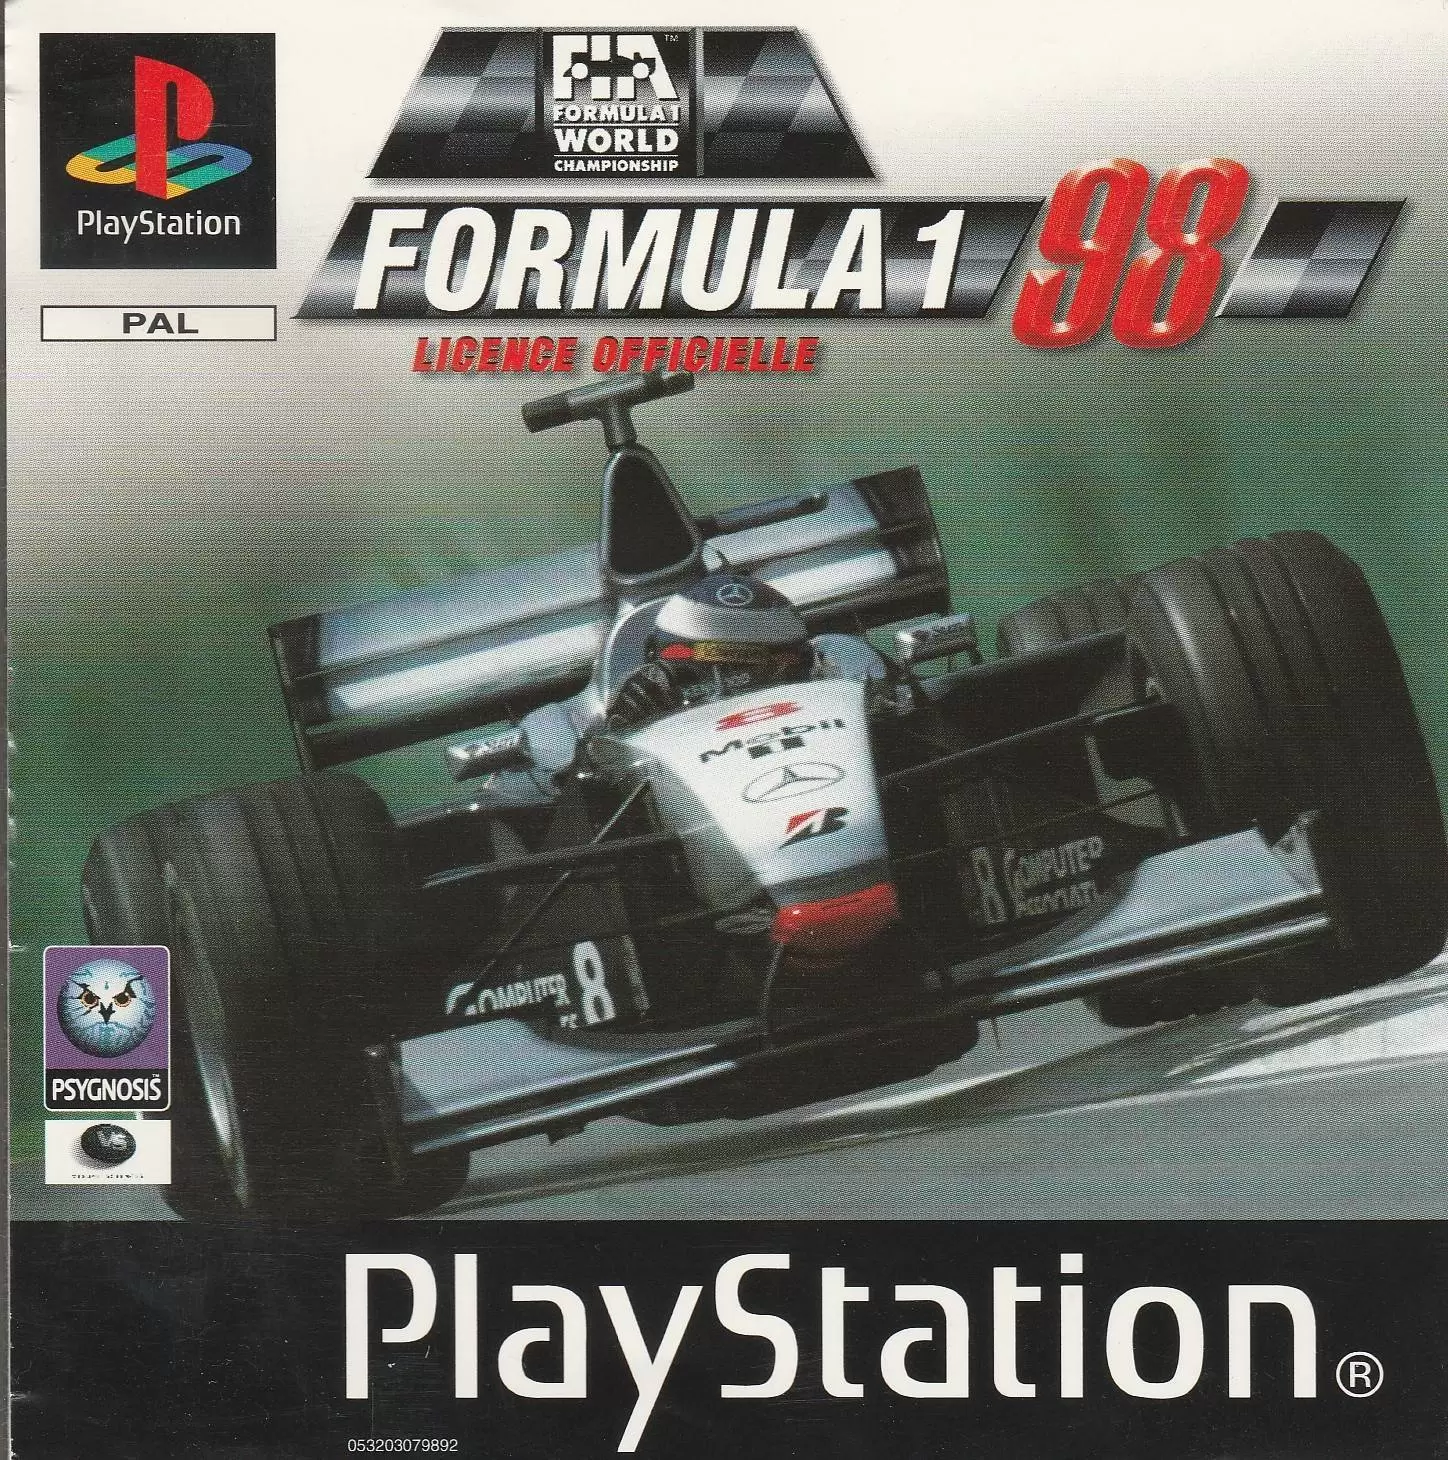 Playstation games - Formula 1 98